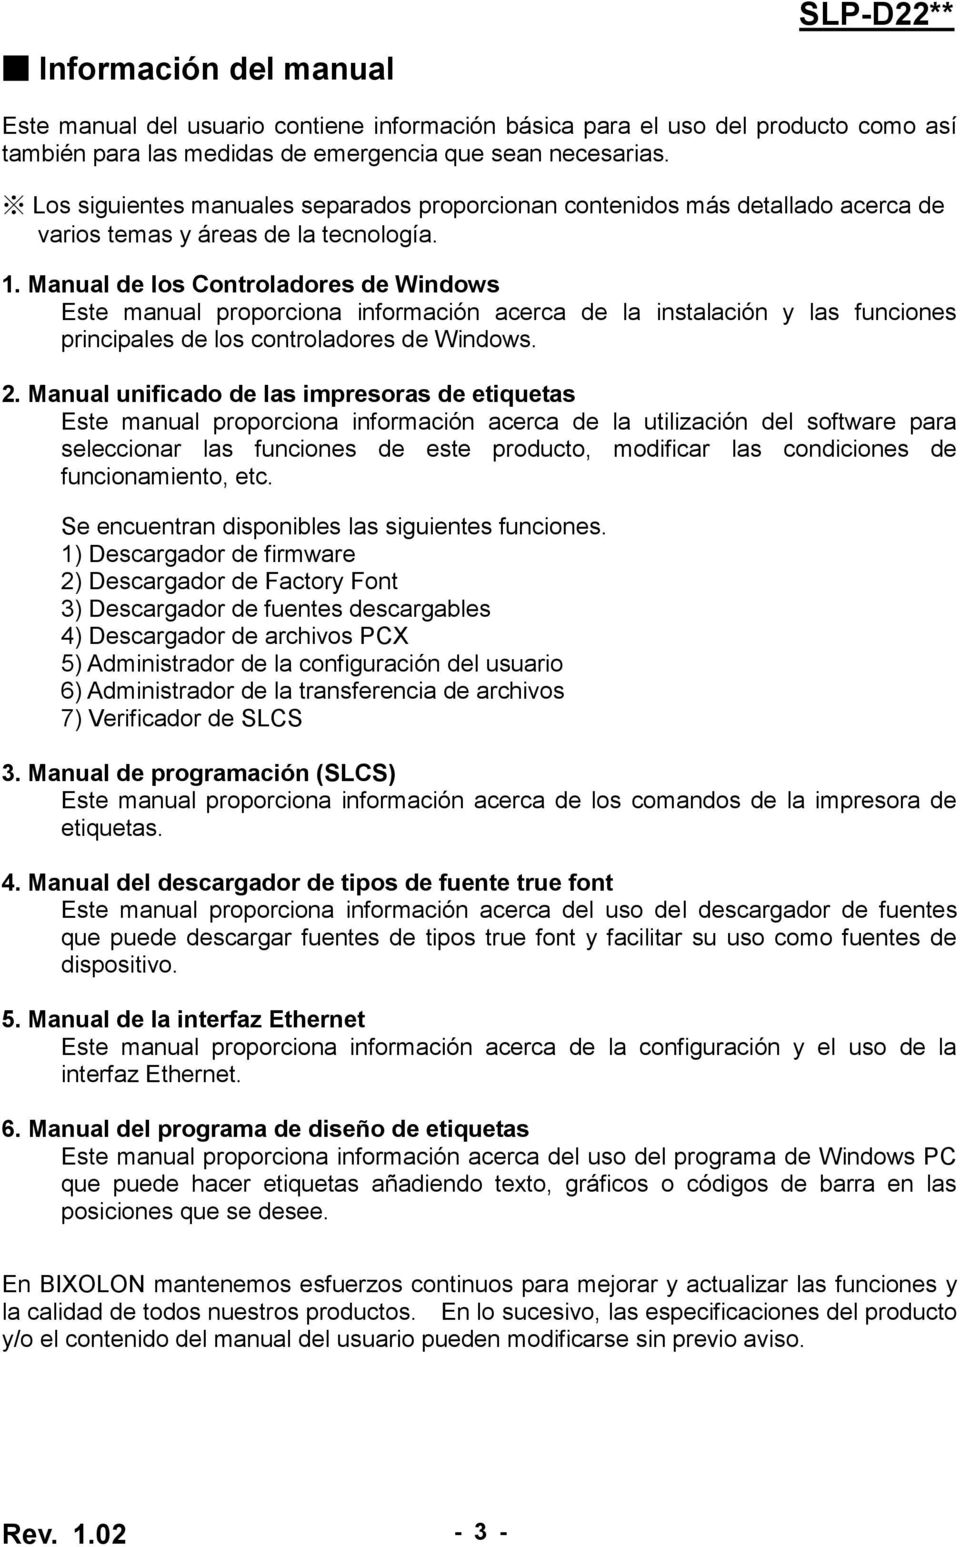 Manual de los Controladores de Windows Este manual proporciona información acerca de la instalación y las funciones principales de los controladores de Windows. 2.